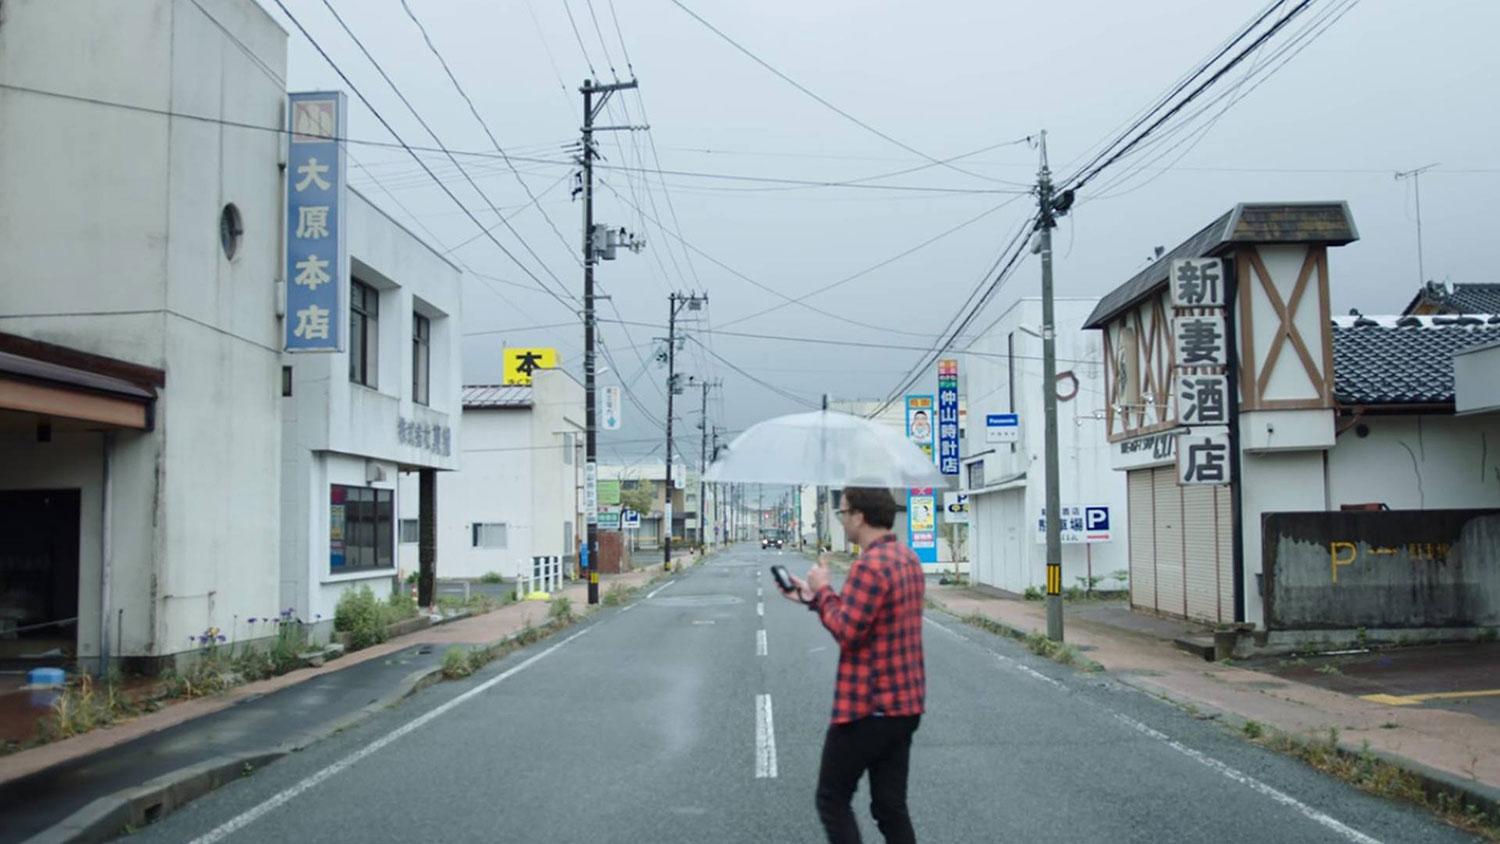 Känsligt område. David Farrier besöker Fukushima i Netflix-serien ”Mörk turism”. 